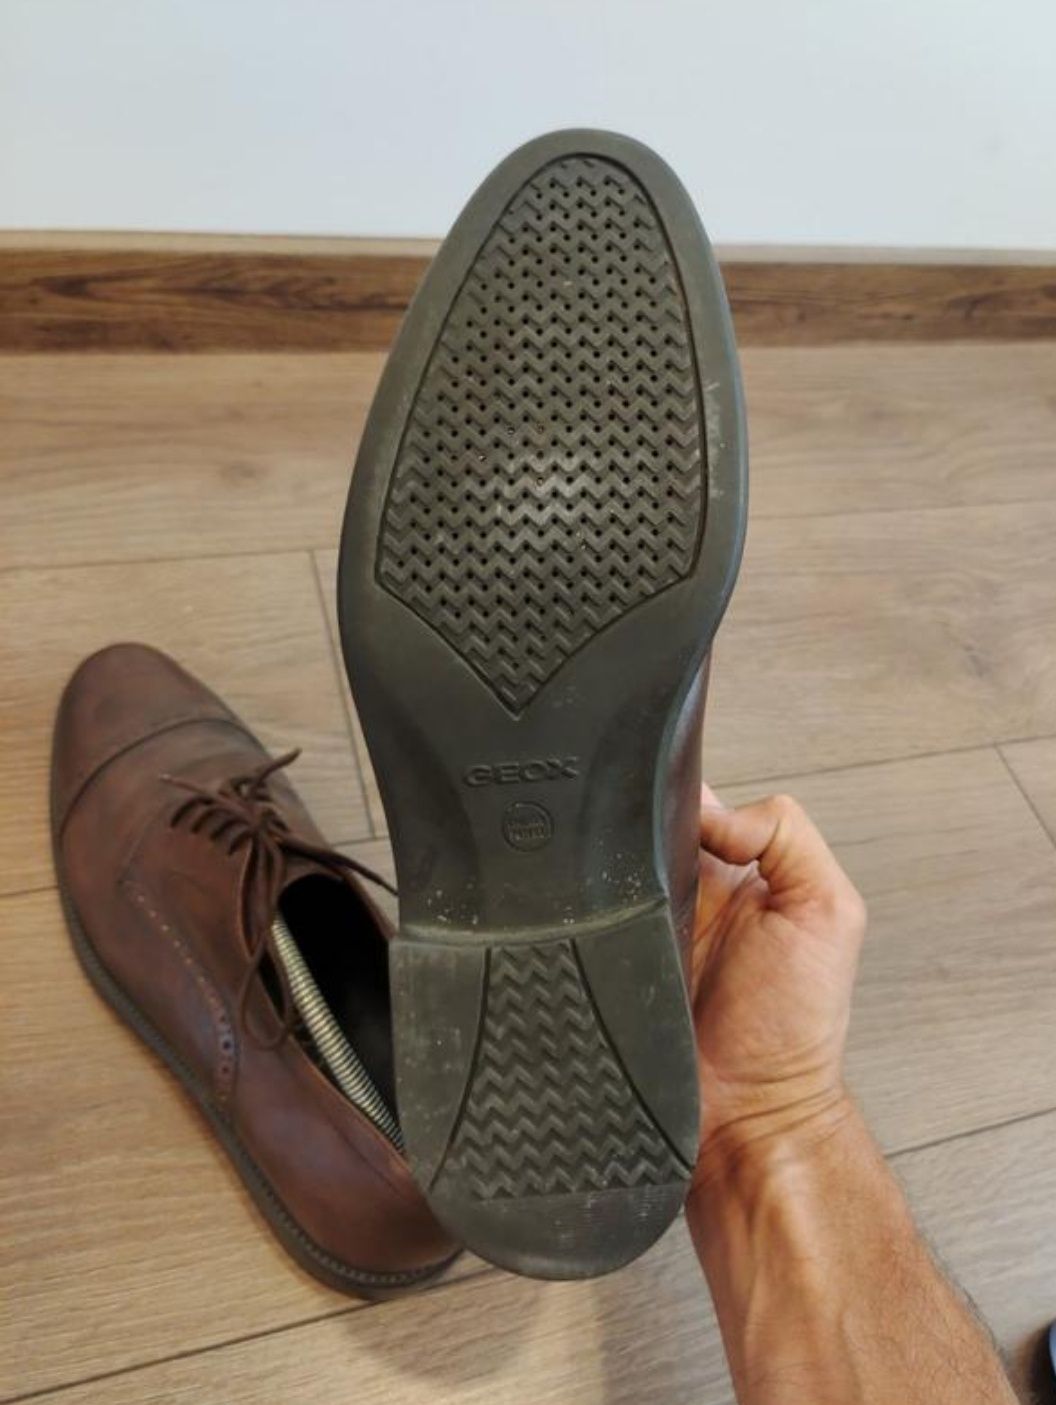 Дербі туфлі фірми Geox 44-й розмір.